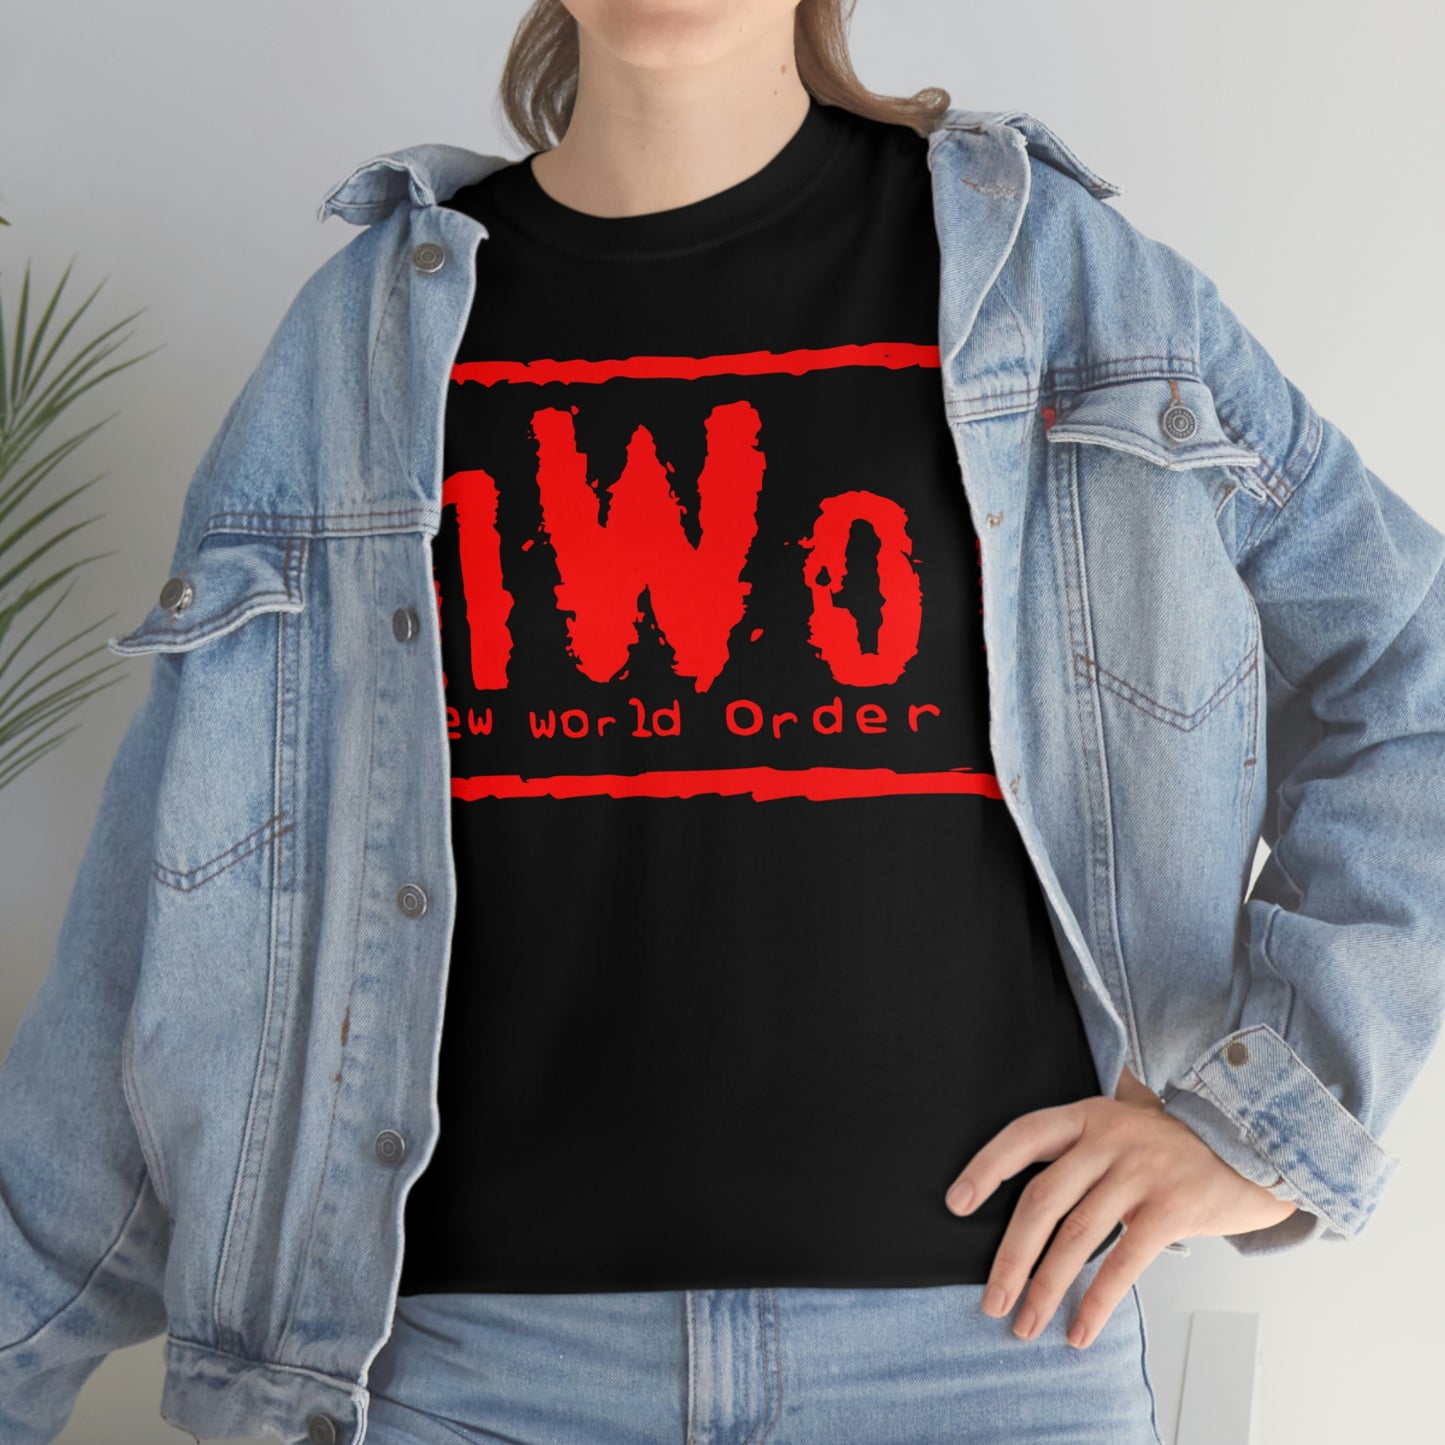 NWO Wolfpac Tribute Shirt